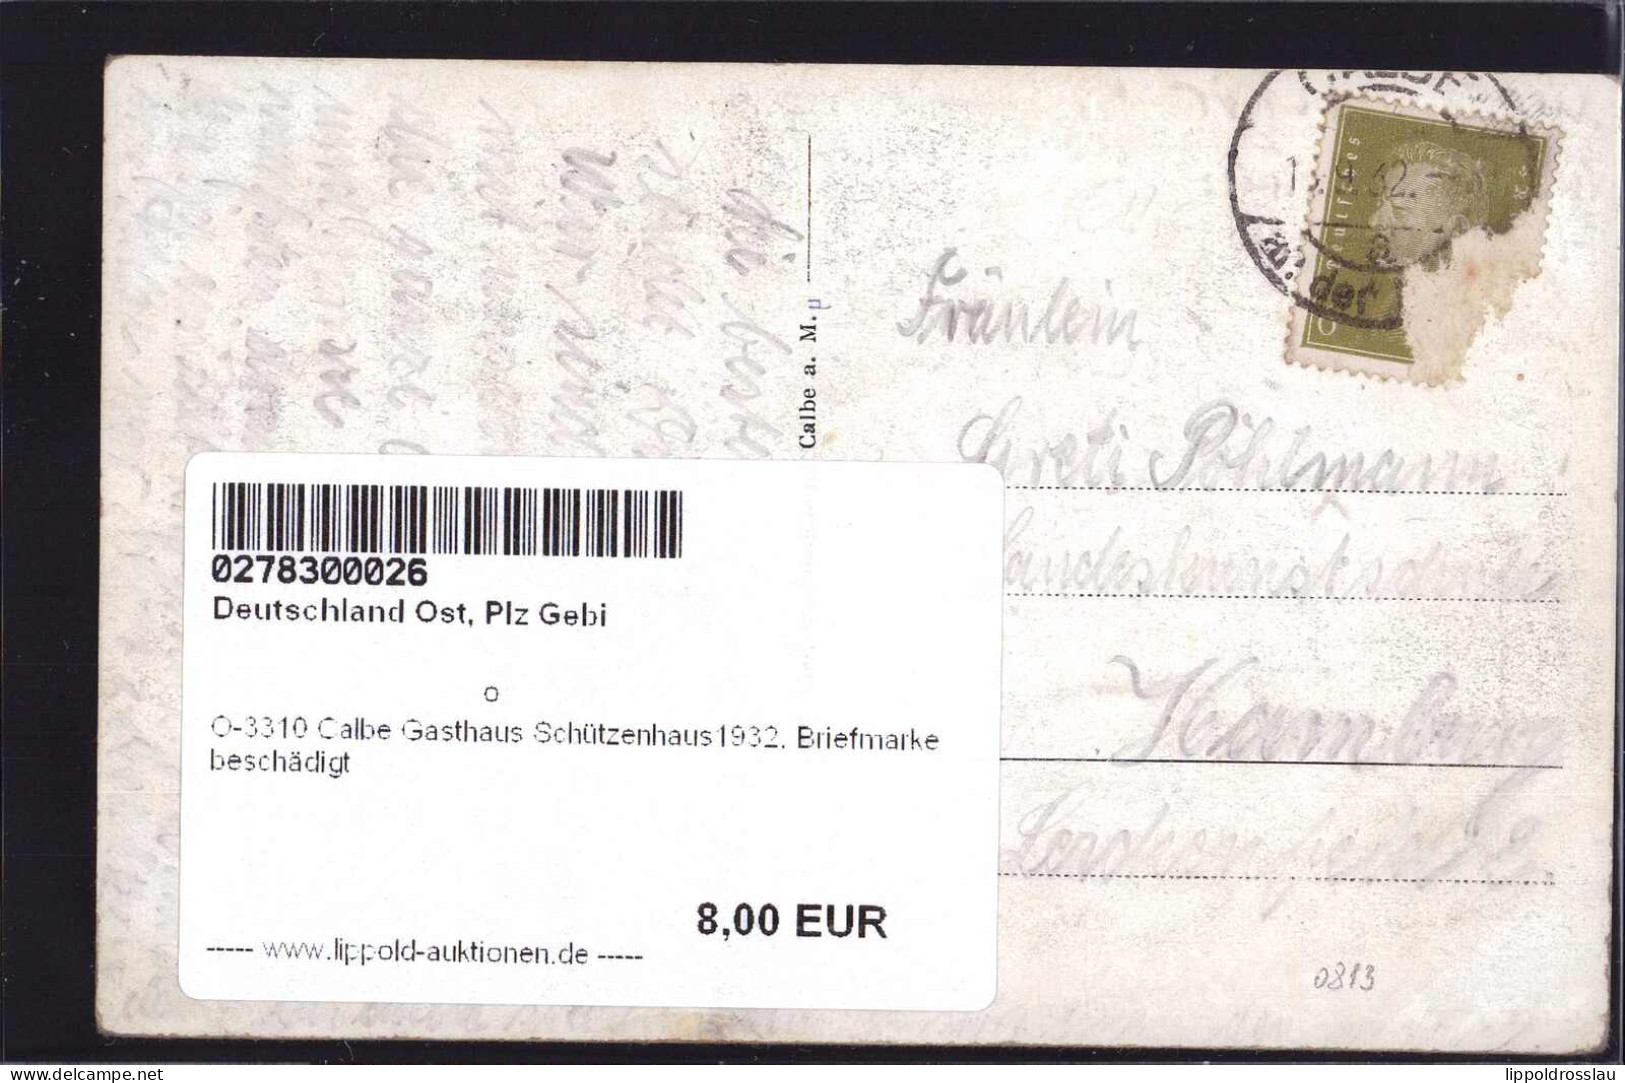 Gest. O-3310 Calbe Gasthaus Schützenhaus1932, Briefmarke Beschädigt - Schoenebeck (Elbe)